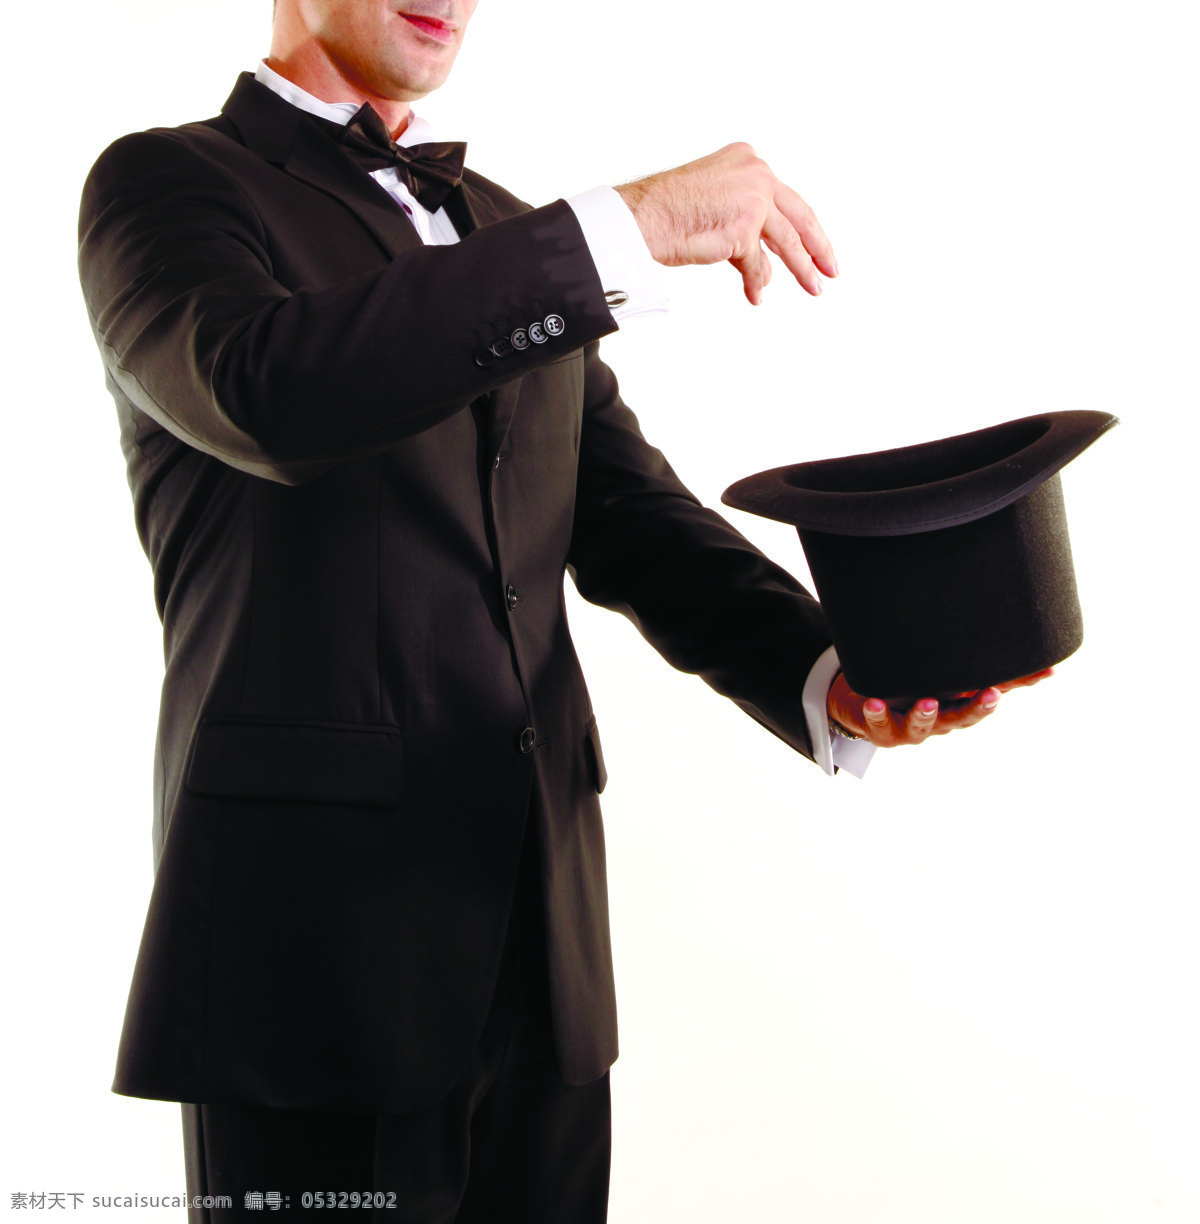 魔术师 表演 帽子 表演马术 马戏团 其他类别 生活百科